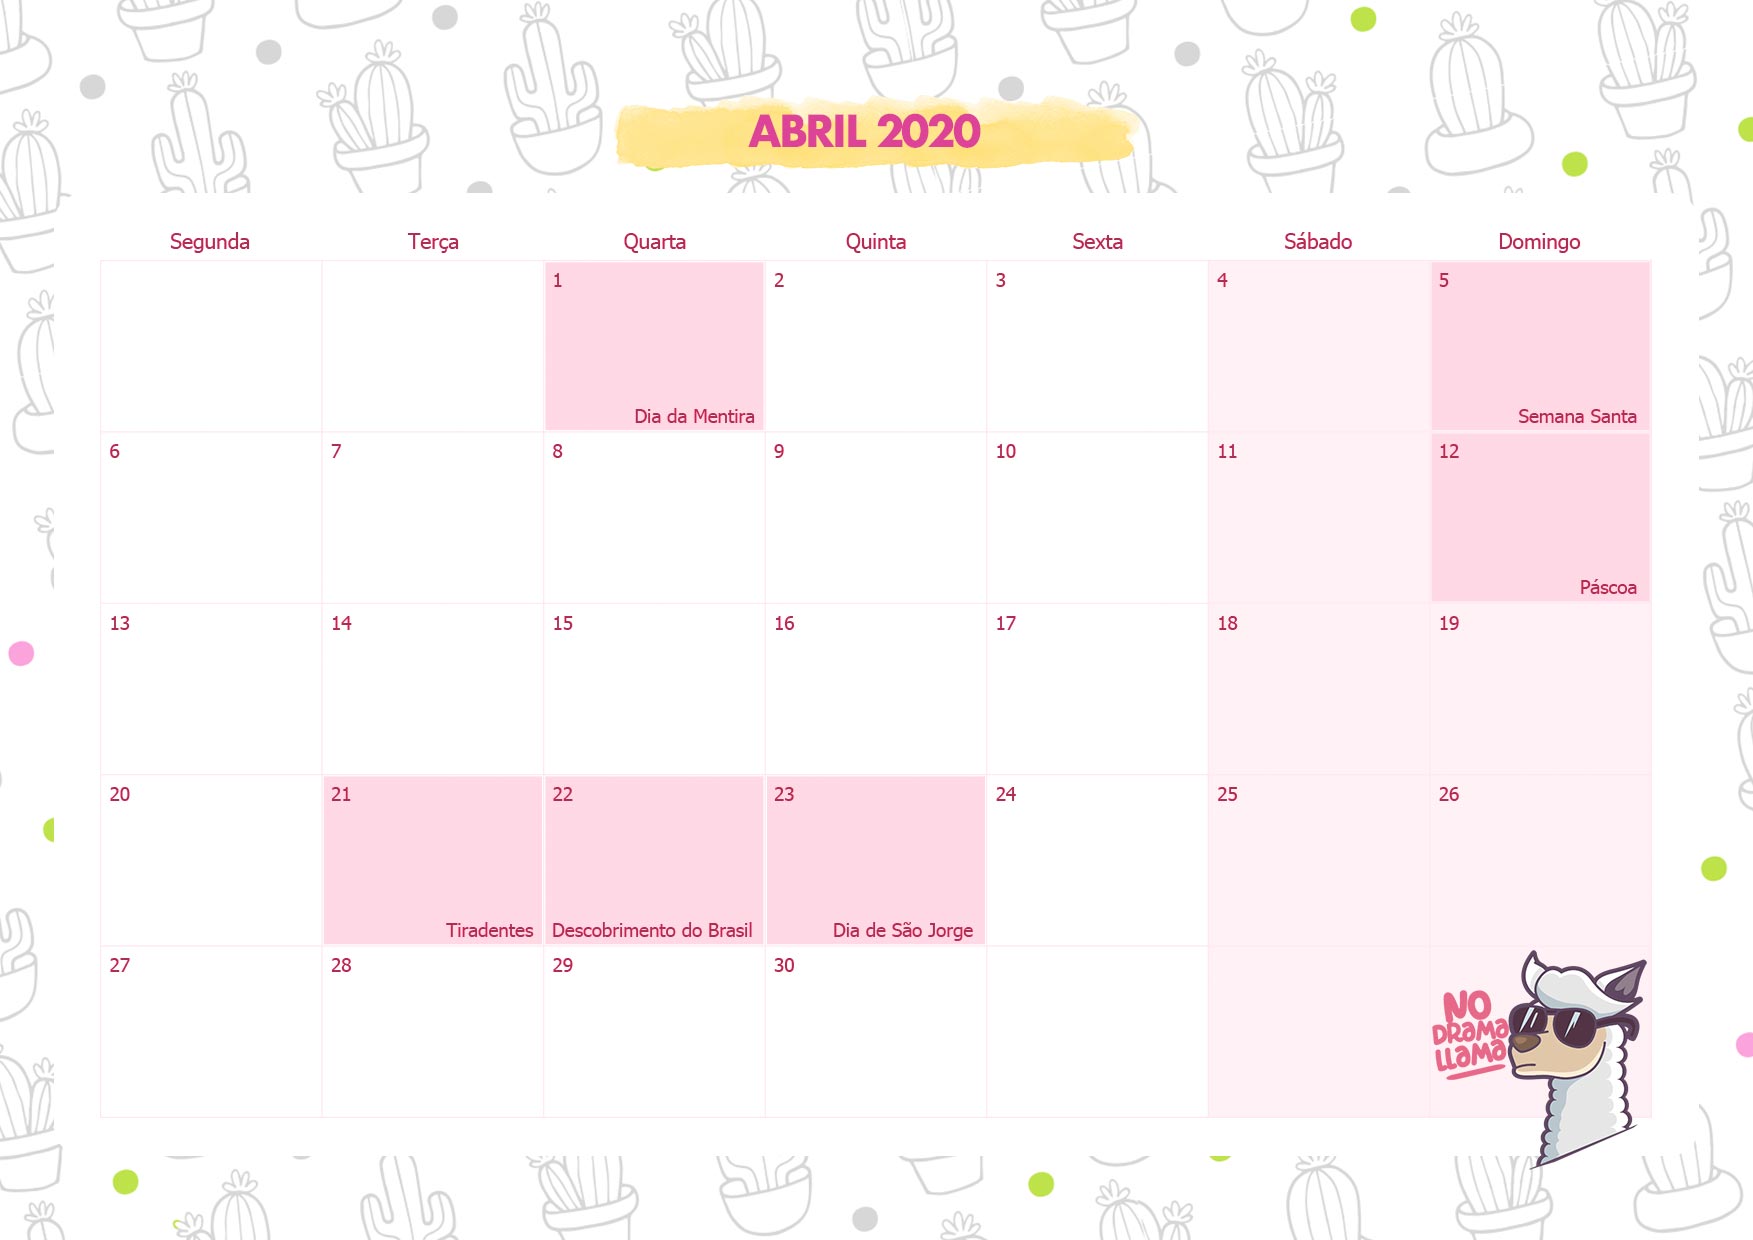 Calendario Mensal No Drama Lhama Abril 2020